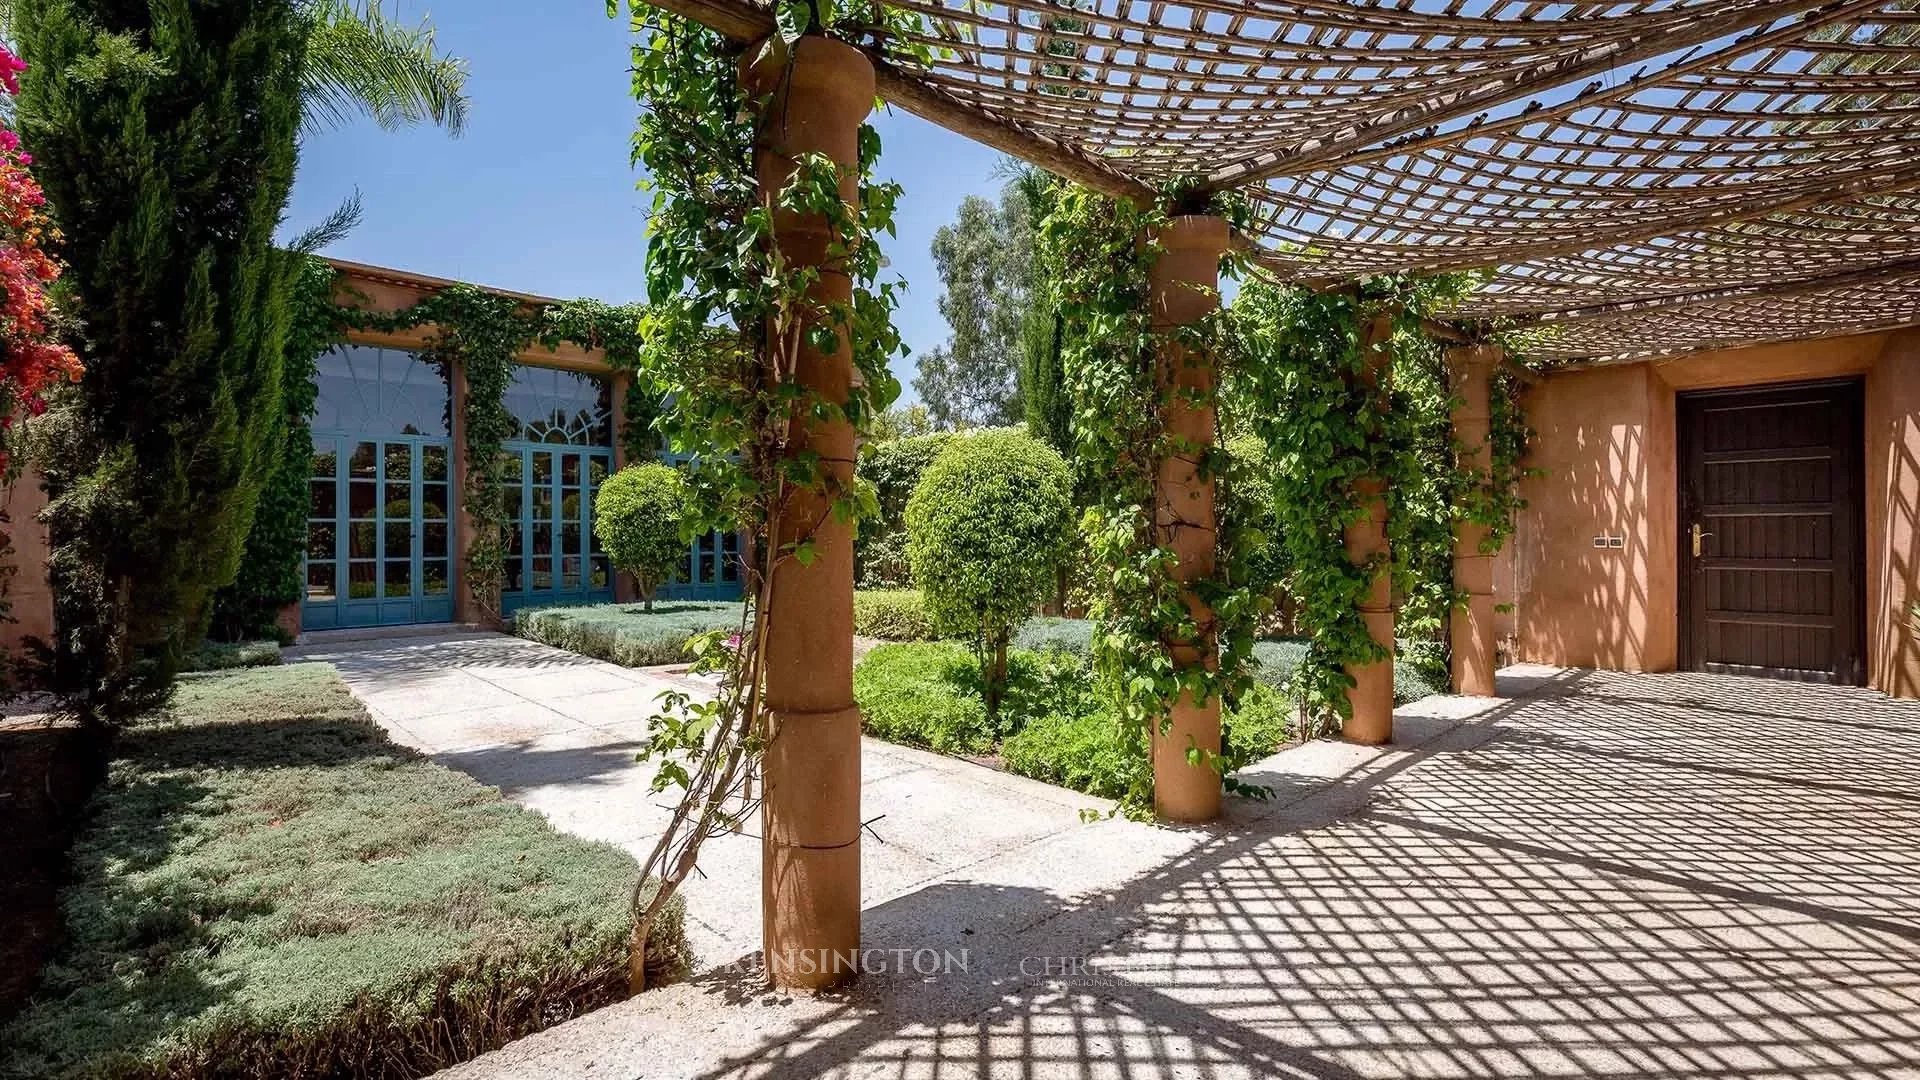 Villa Magta in Marrakech, Morocco